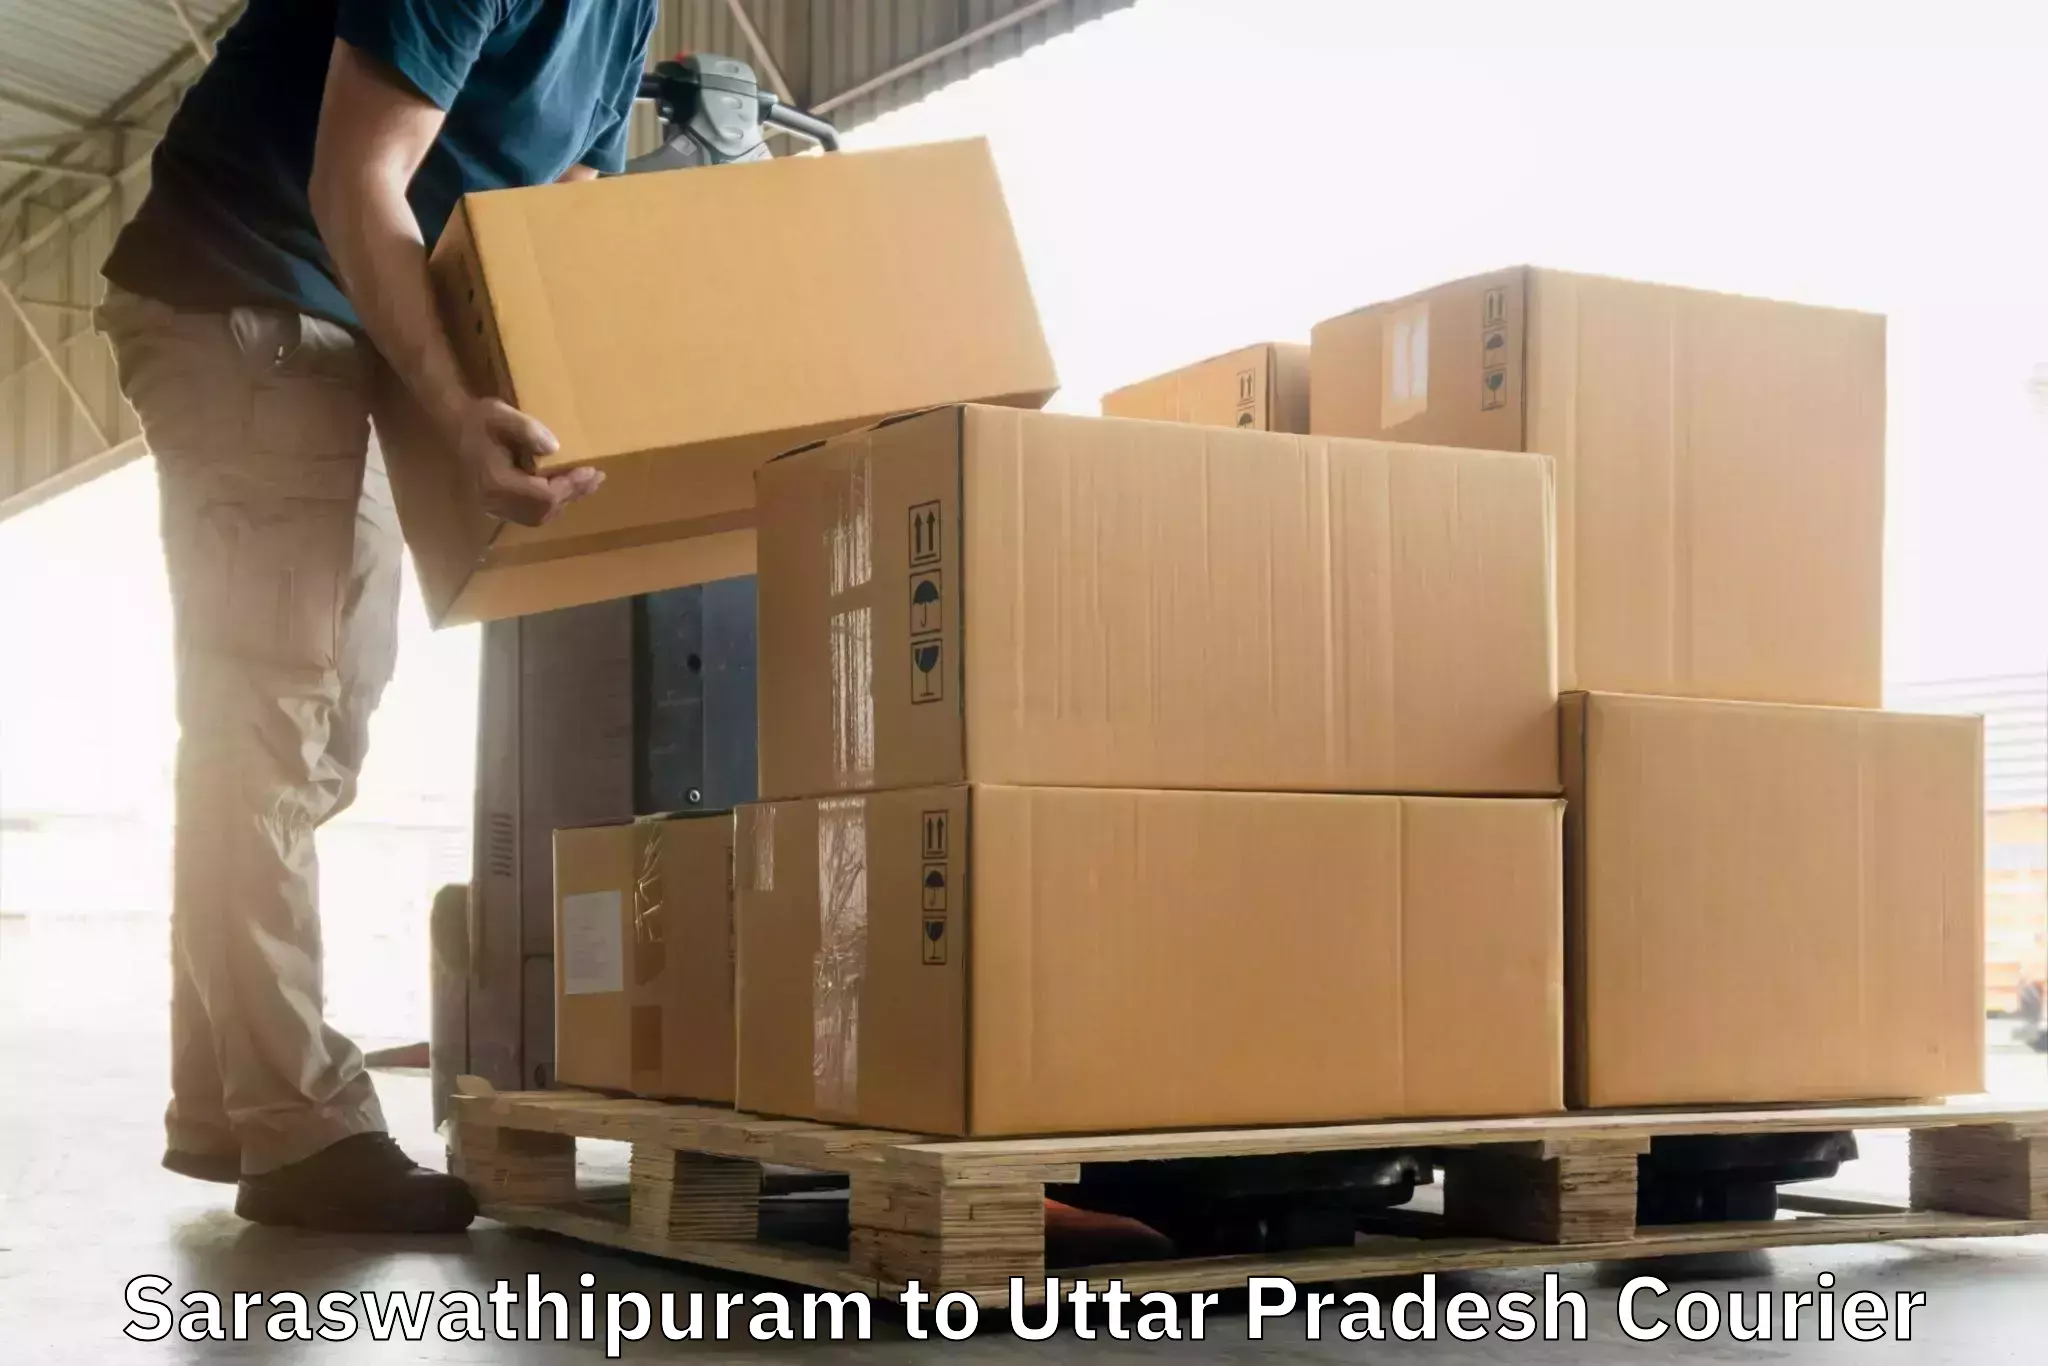 Secure packaging in Saraswathipuram to Gauri Bazar